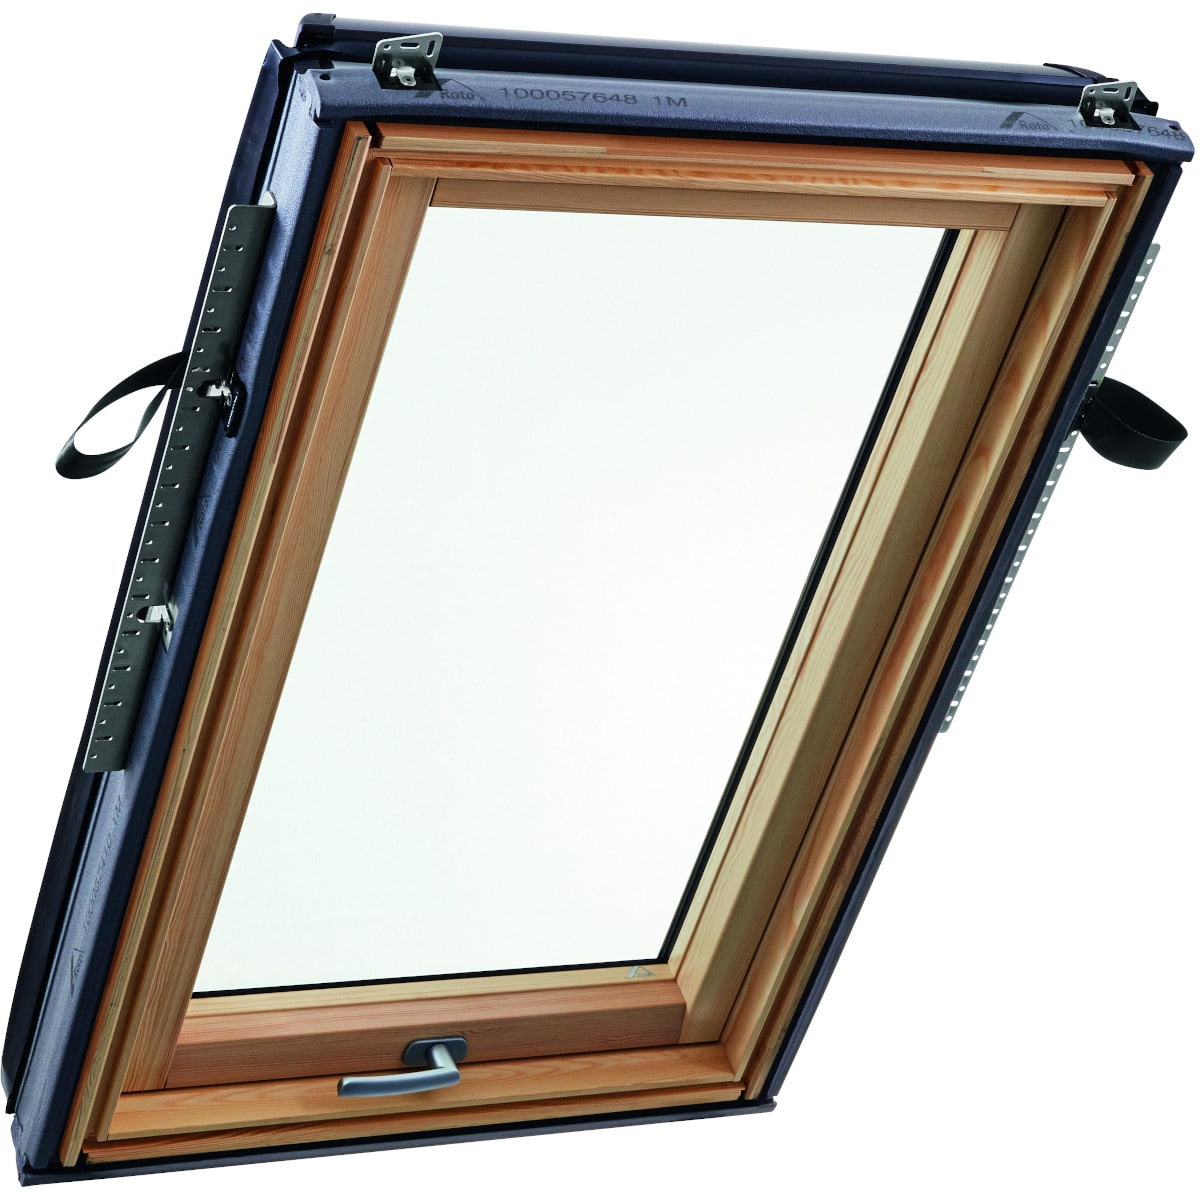 Окно мансардное деревянное с нижней ручкой Roto R89G H200. 2 камерный стеклопакет. ThermoBlock WD.